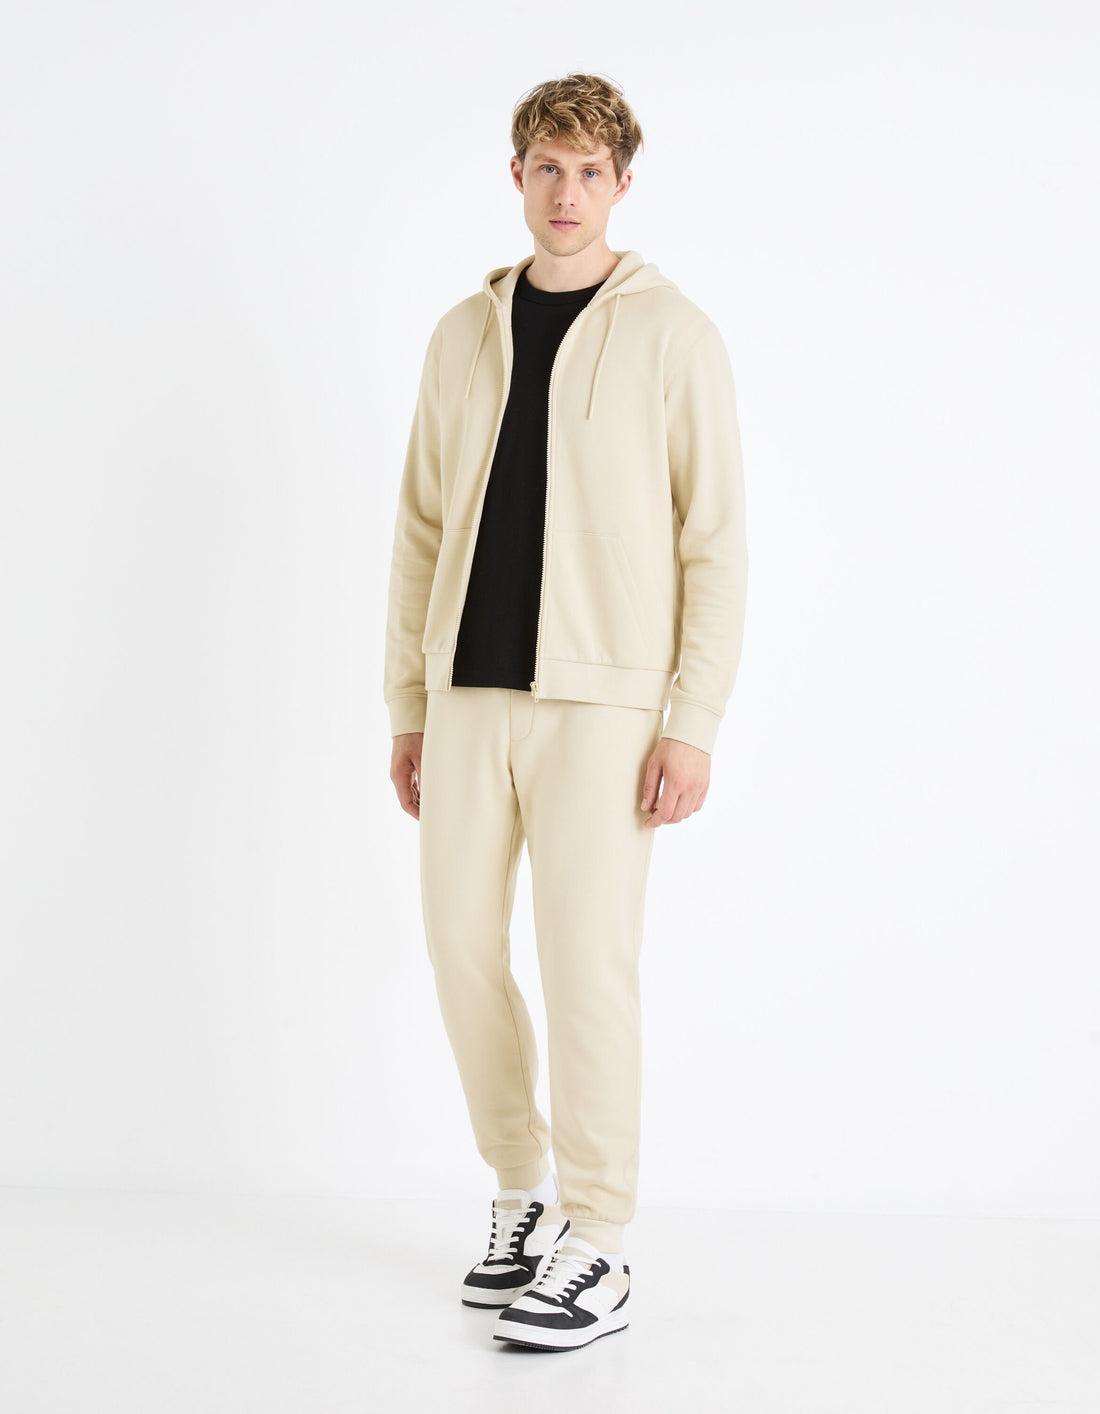 Zipped Hooded Sweatshirt 100% Cotton_FETHREE_BEIGE_02